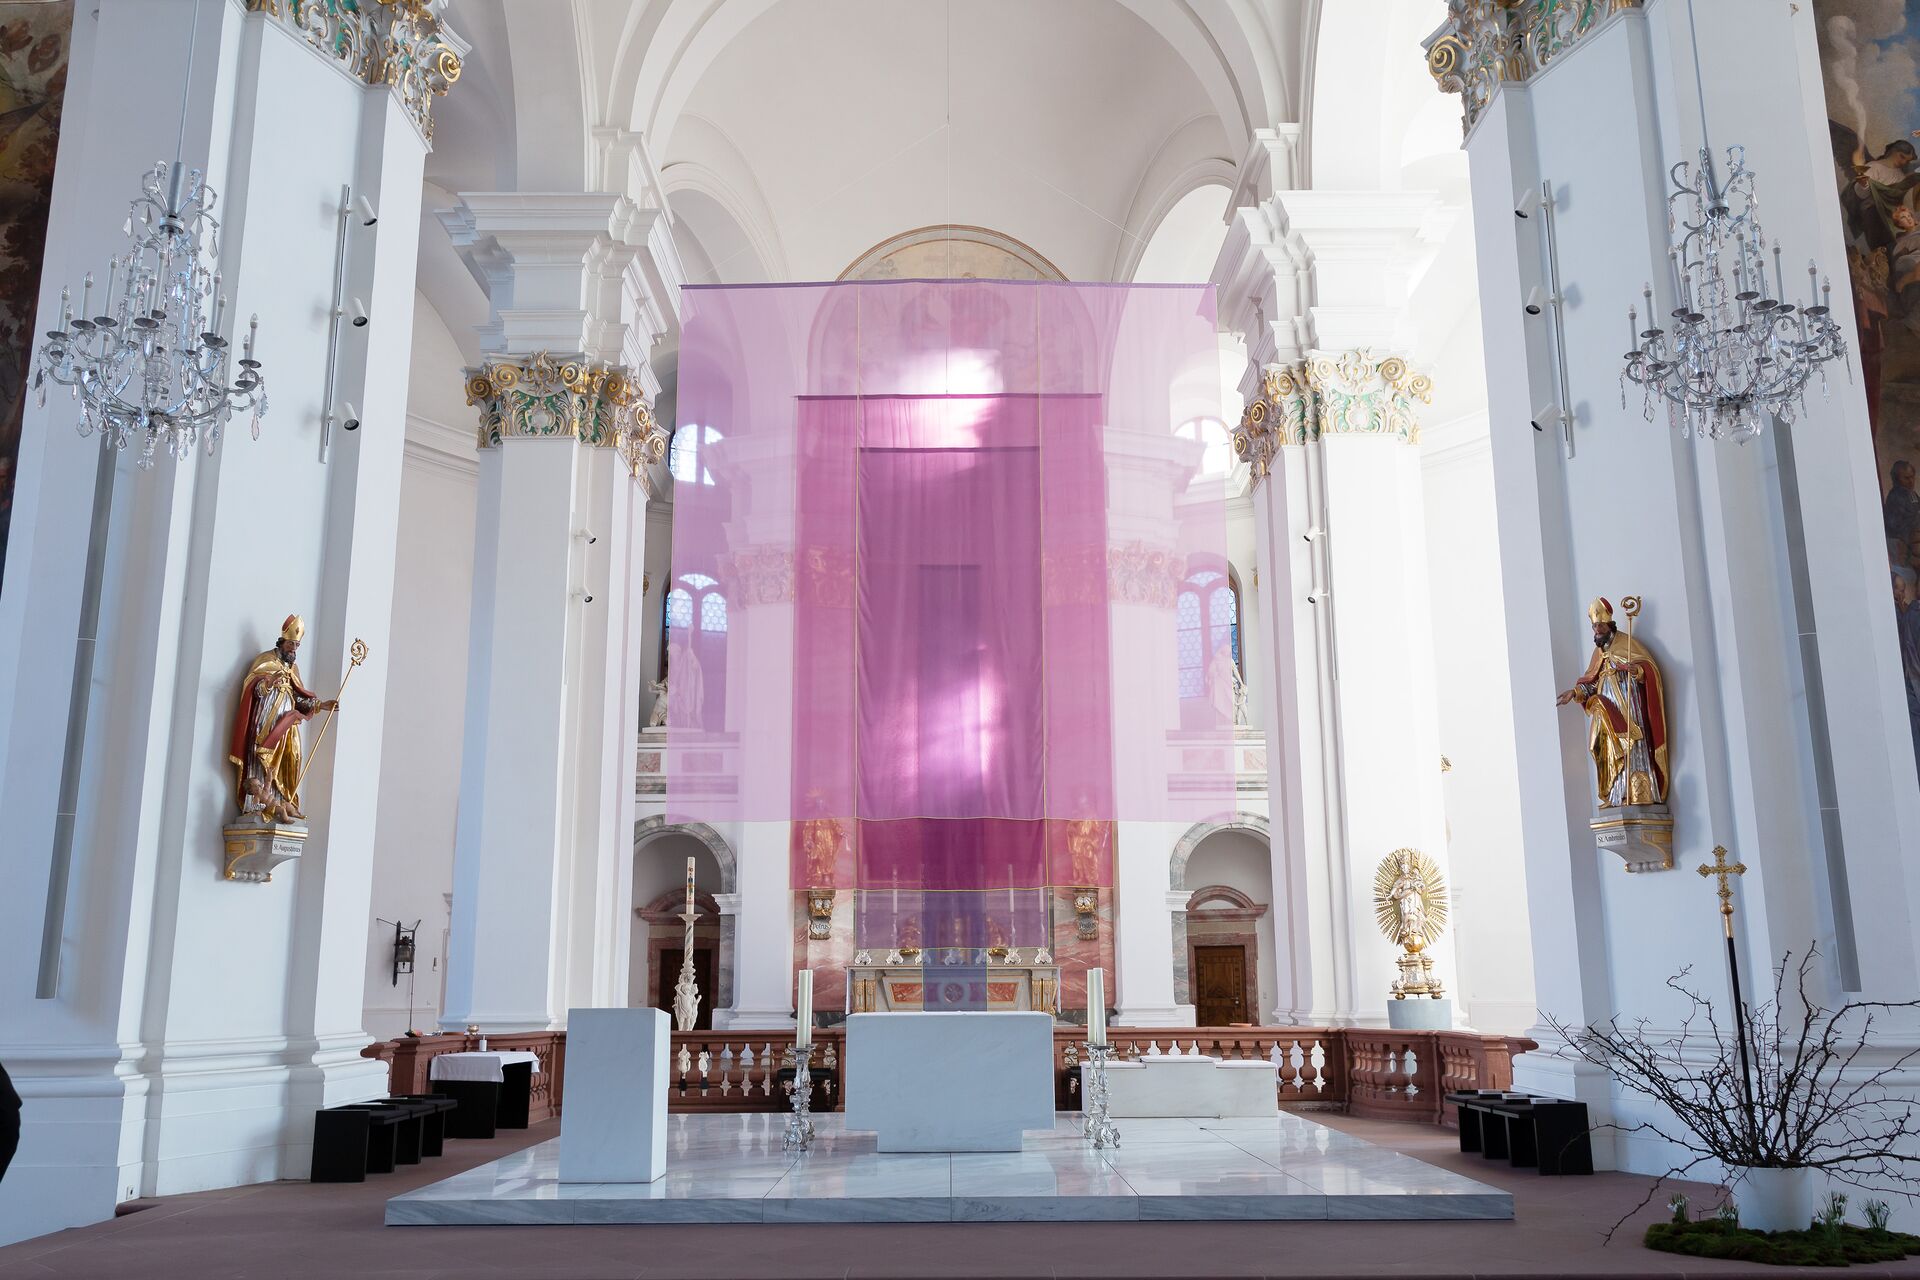 Blick in den Innenraum einer barocken, weißen Kirche, vorn im Altarraum verhüllt ein zartes, transparentes Tuch in violetten Farbtönen den Altar.